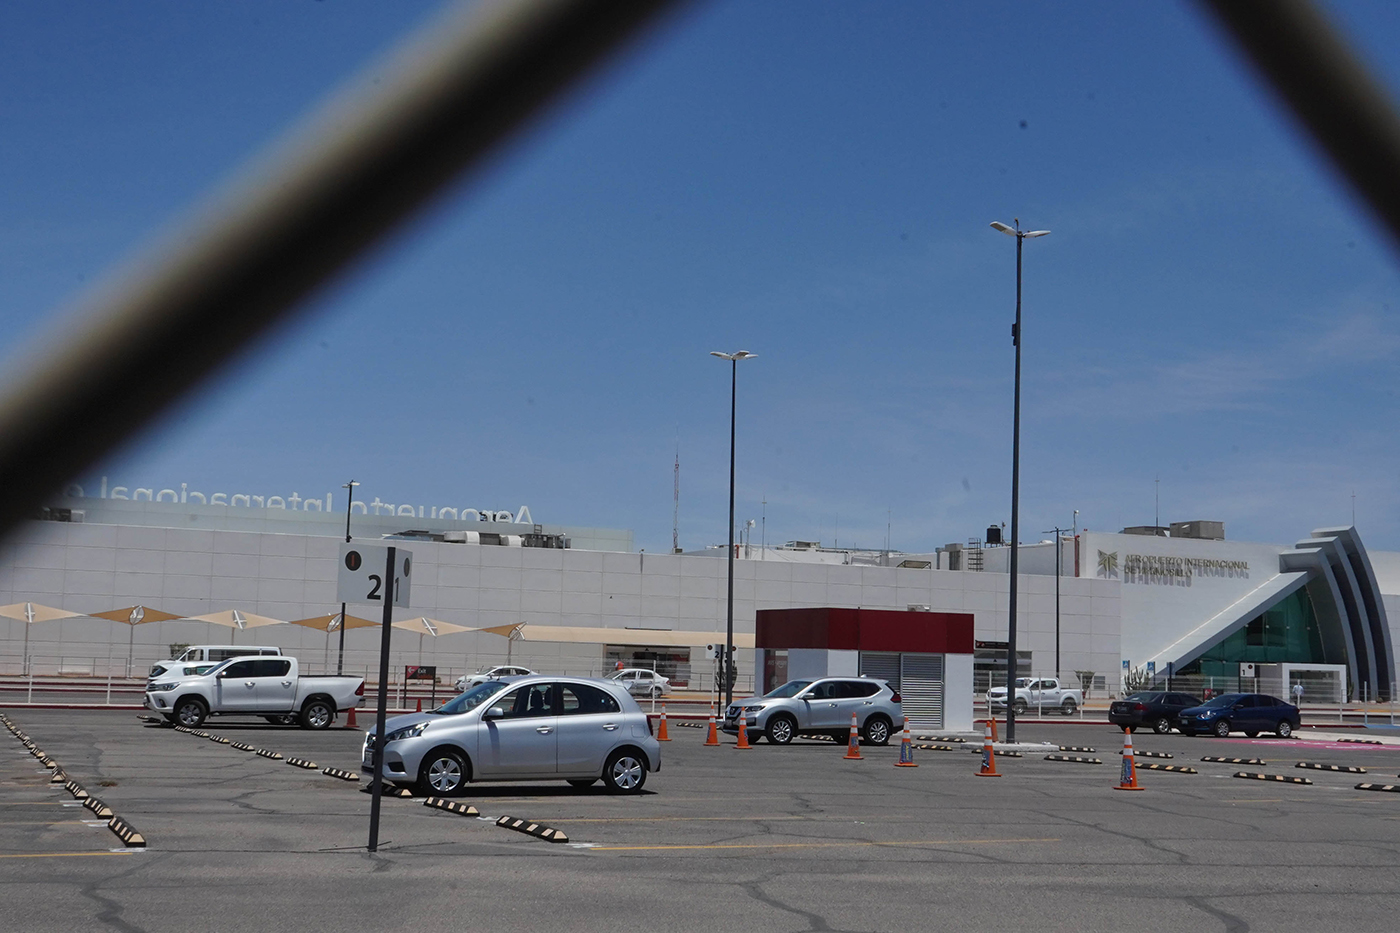 Aeropuerto Internacional de Hermosillo, Sonora. El lugar donde ocurrió la extorsión.